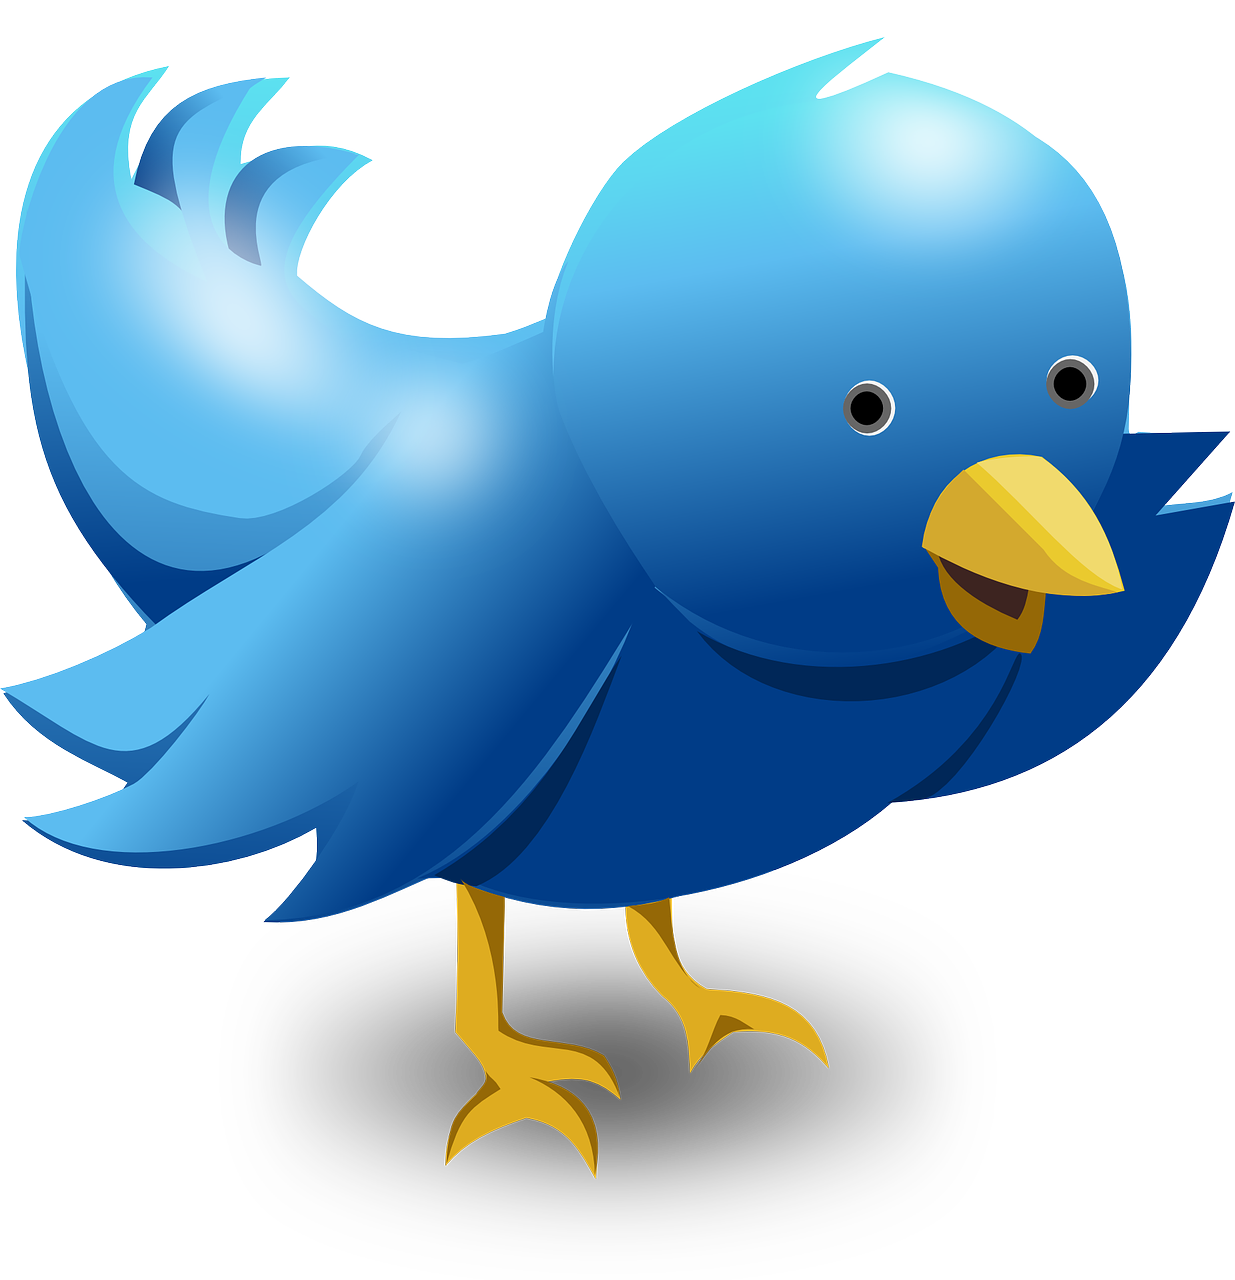 Un simpático pájaro de estilo twittero